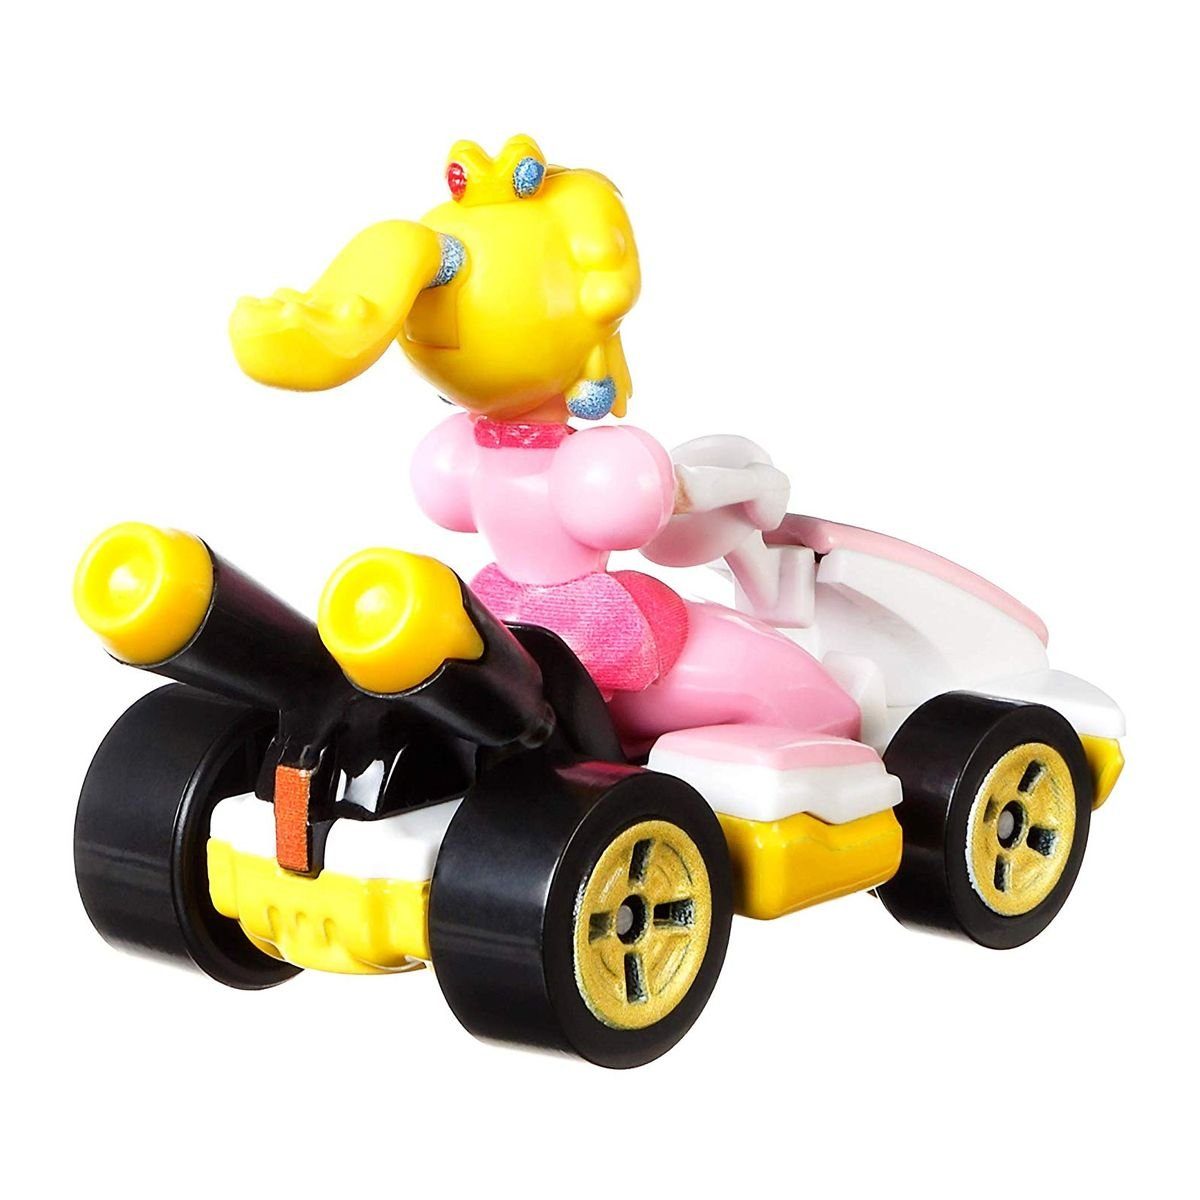 Mattel® Spielzeug-Rennwagen Kart Mini - mit Die-Cast GBG28 Fahrzeug - Hot Fi Wheels Mattel - Mario